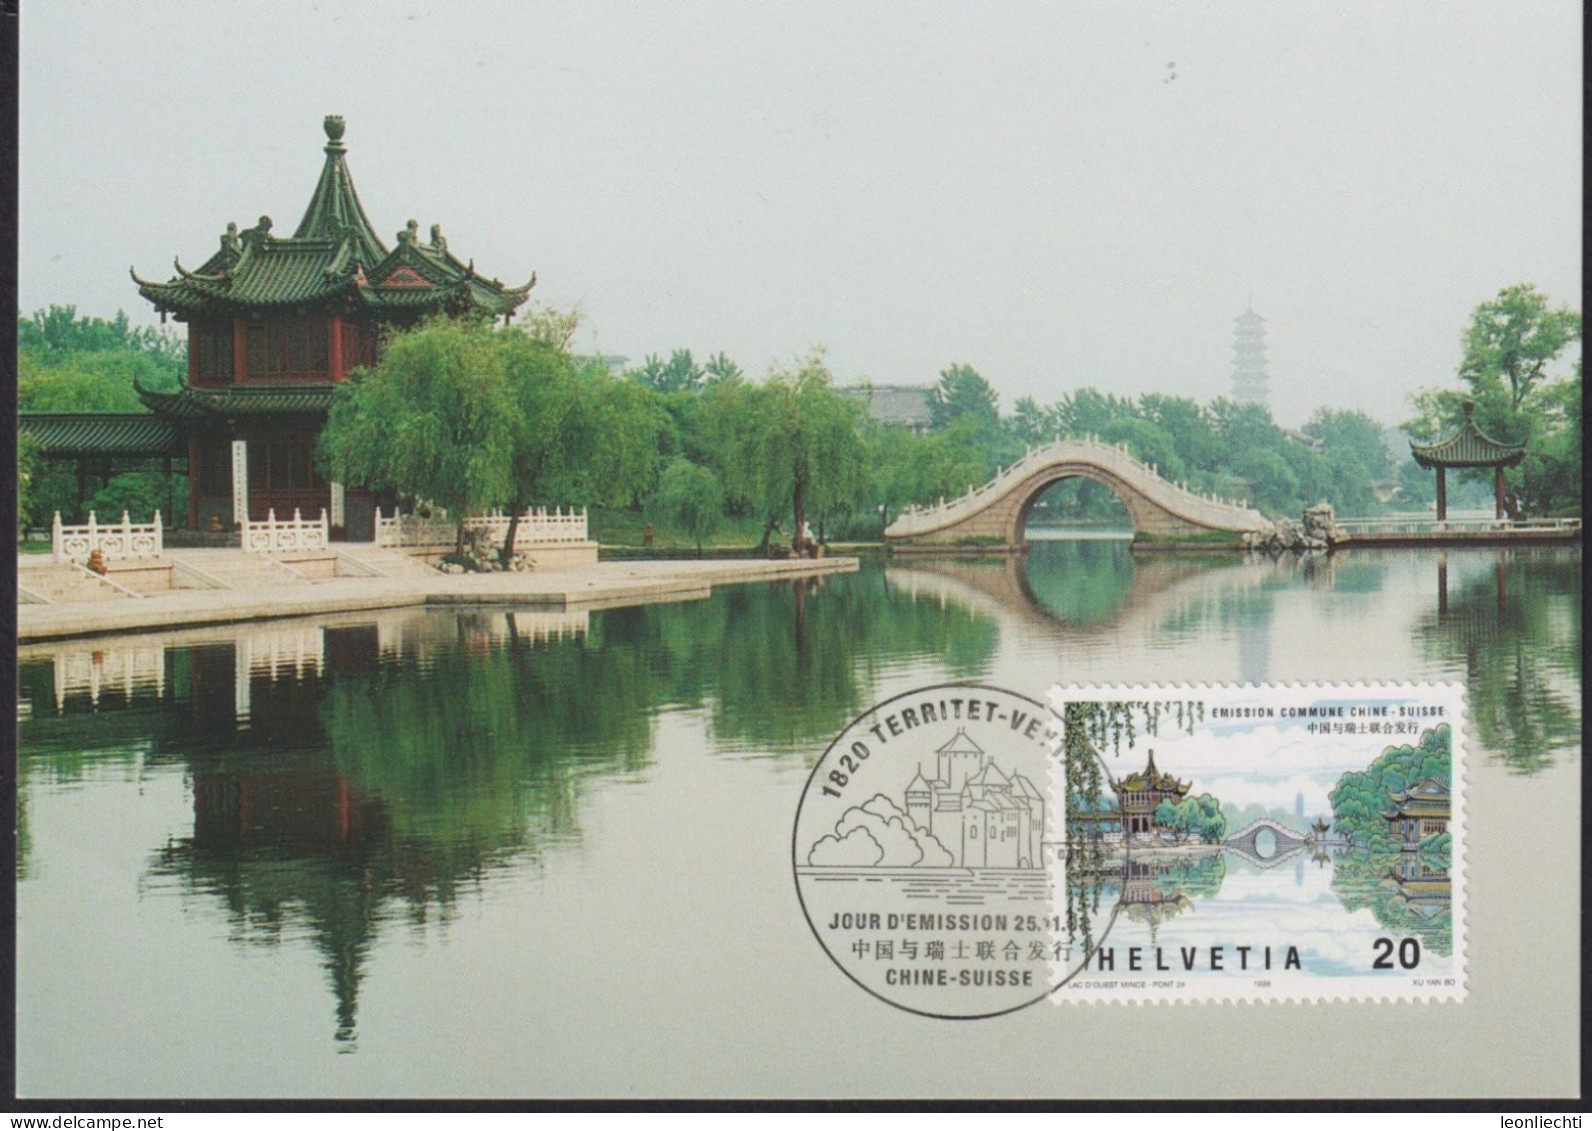 1998 Schweiz Lot. Gemeinschaftsausgabe Schweiz - China 12 Belege - Covers & Documents